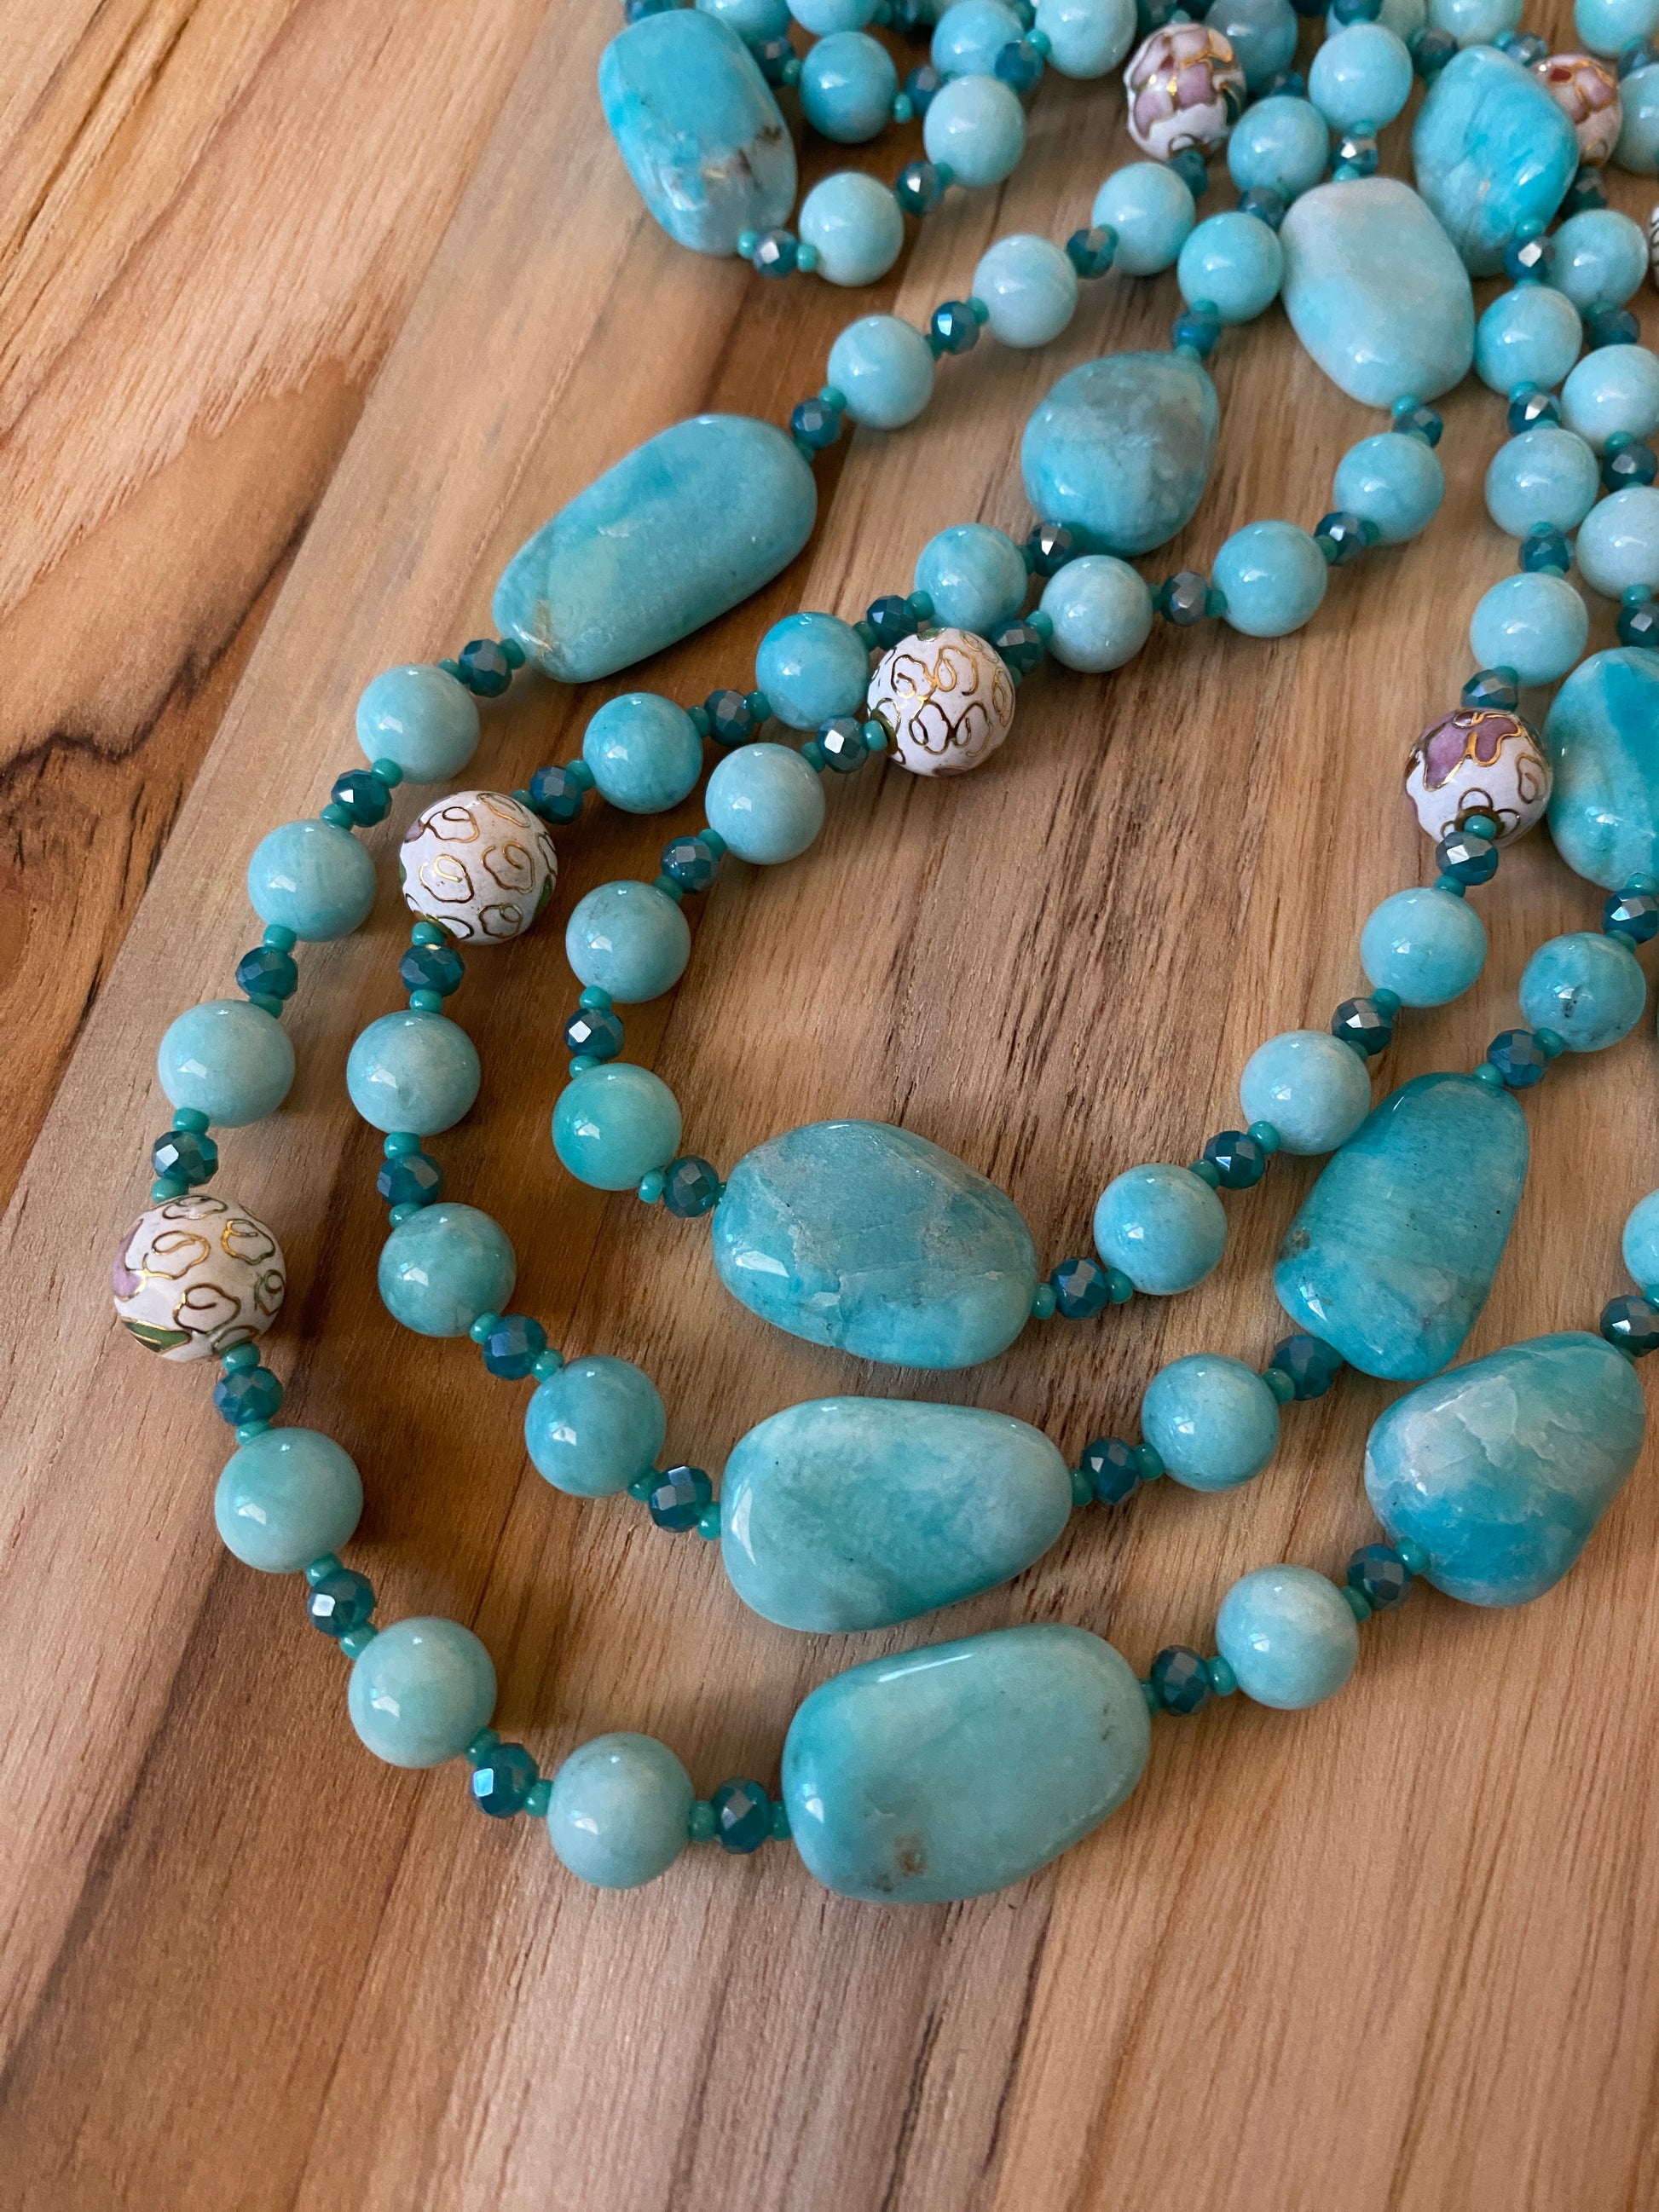 60" Extra Long Aqua Blue Beaded Amazonite Wraparound Necklace with Cloisonne & Crystal Beads My Urban Gems